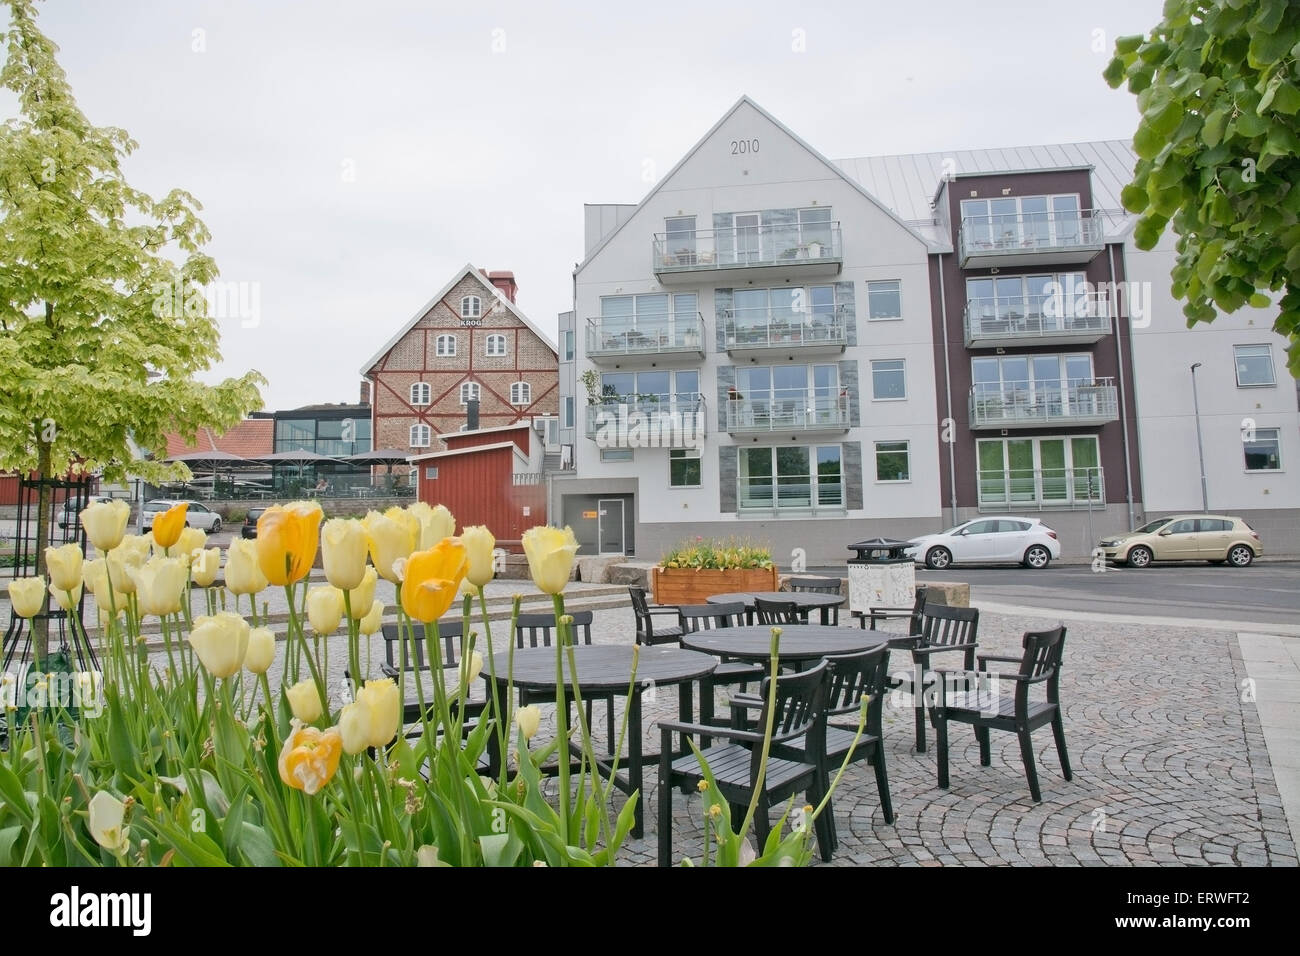 FALKENBERG, Schweden - 6. Juni 2015: Moderne Wohngebäude mit Tulpen im Zentrum der Stadt am 6. Juni 2015 in Falkenberg, Schweden Stockfoto